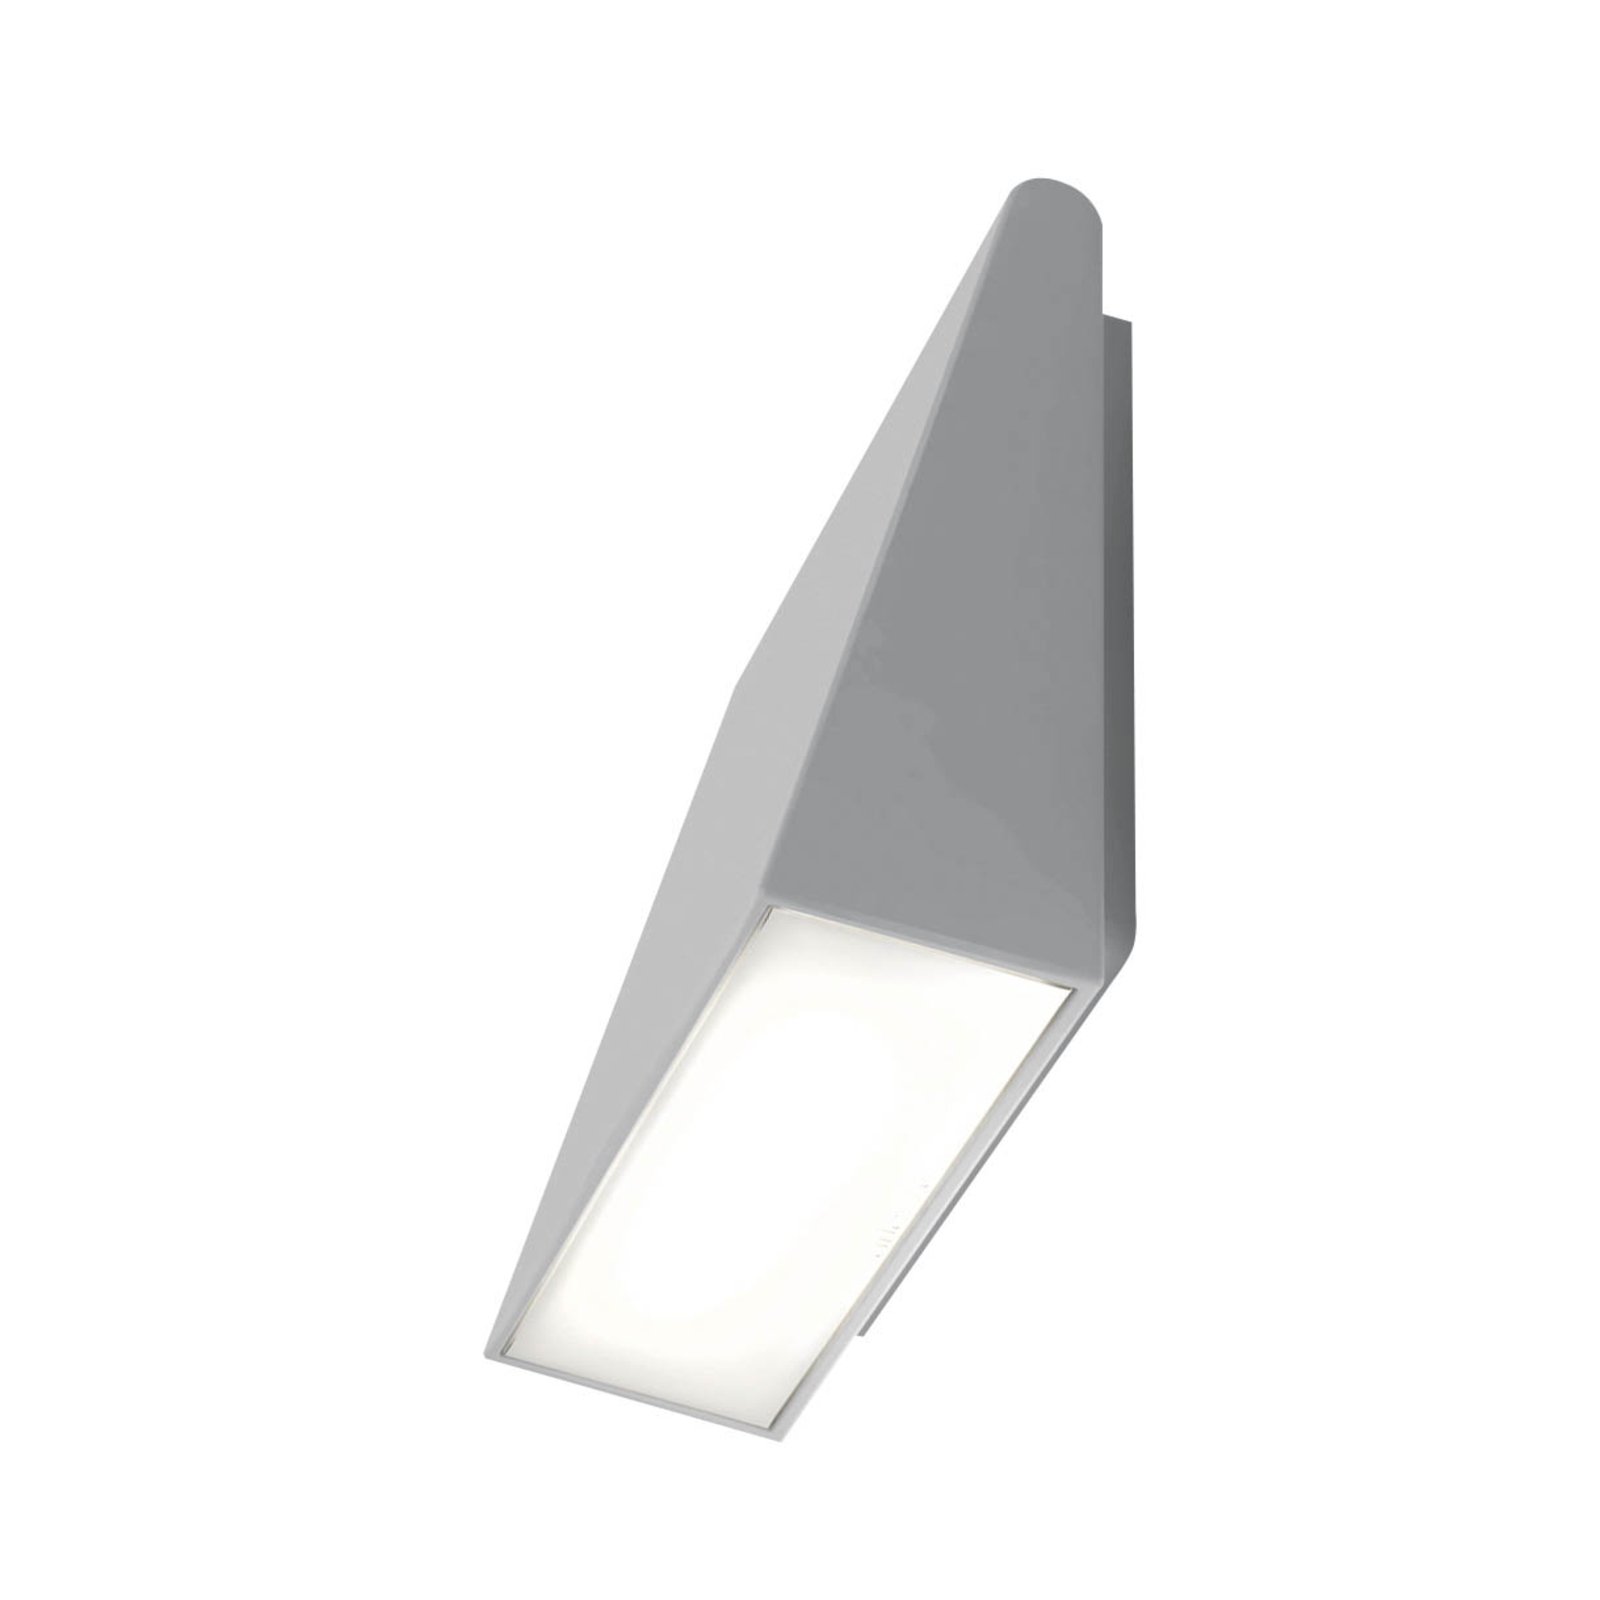 Artemide Cuneo applique d'extérieur LED, grise